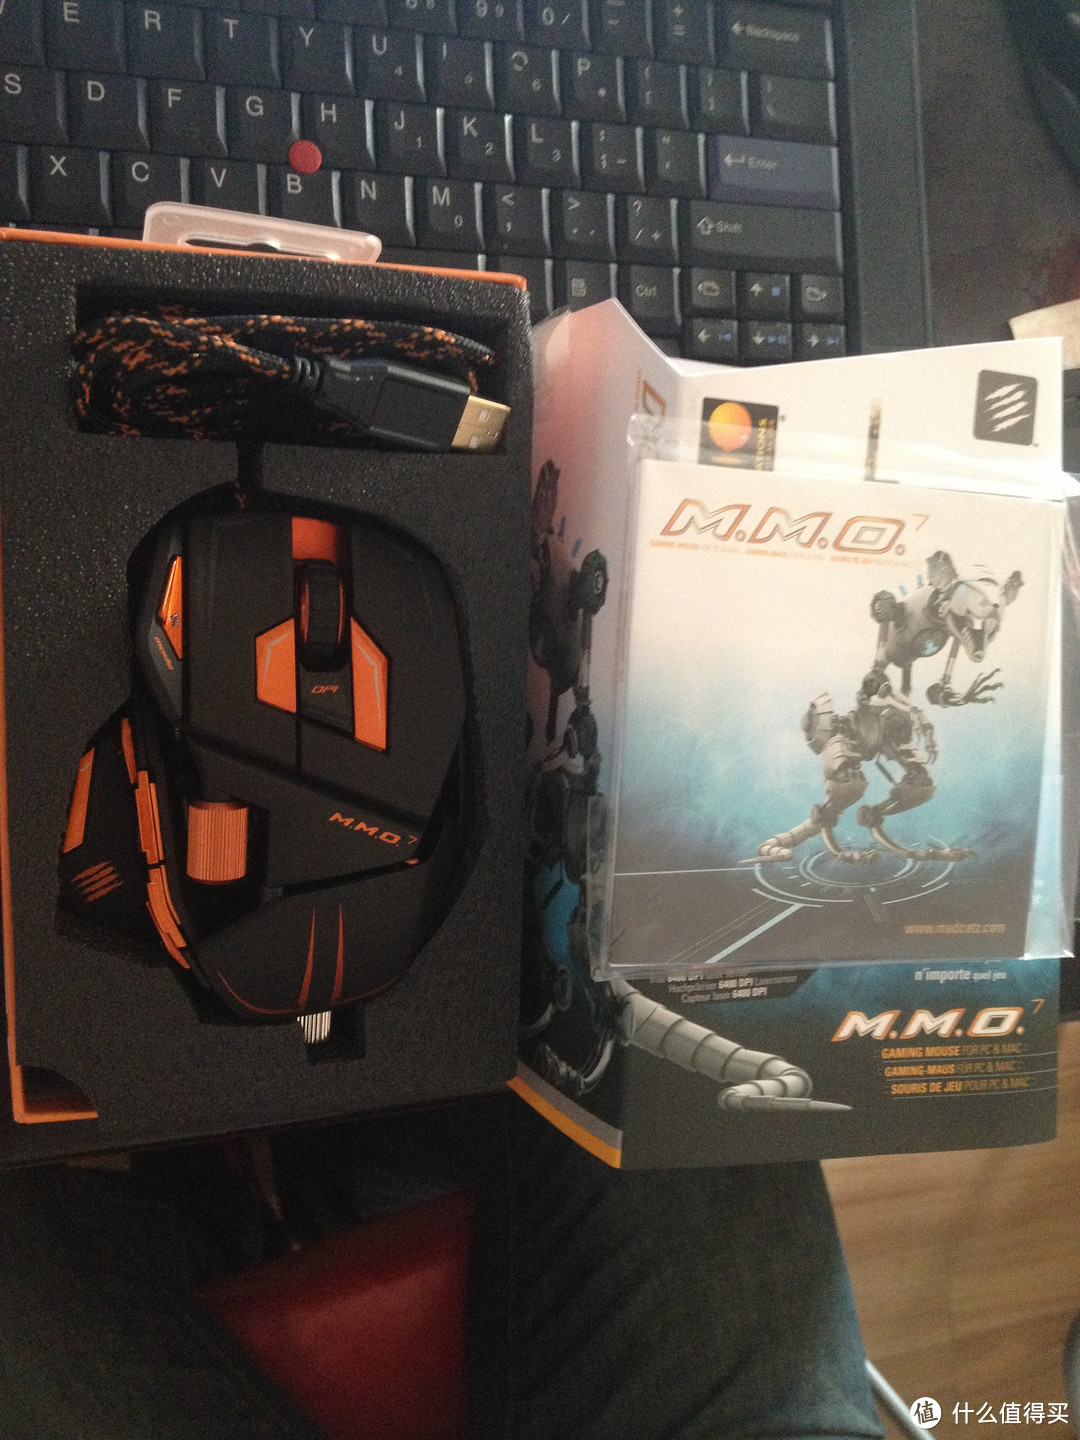 高端大气上档次-----Cyborg 赛暴客 M.M.O.7 游戏鼠标 炎魔版开箱